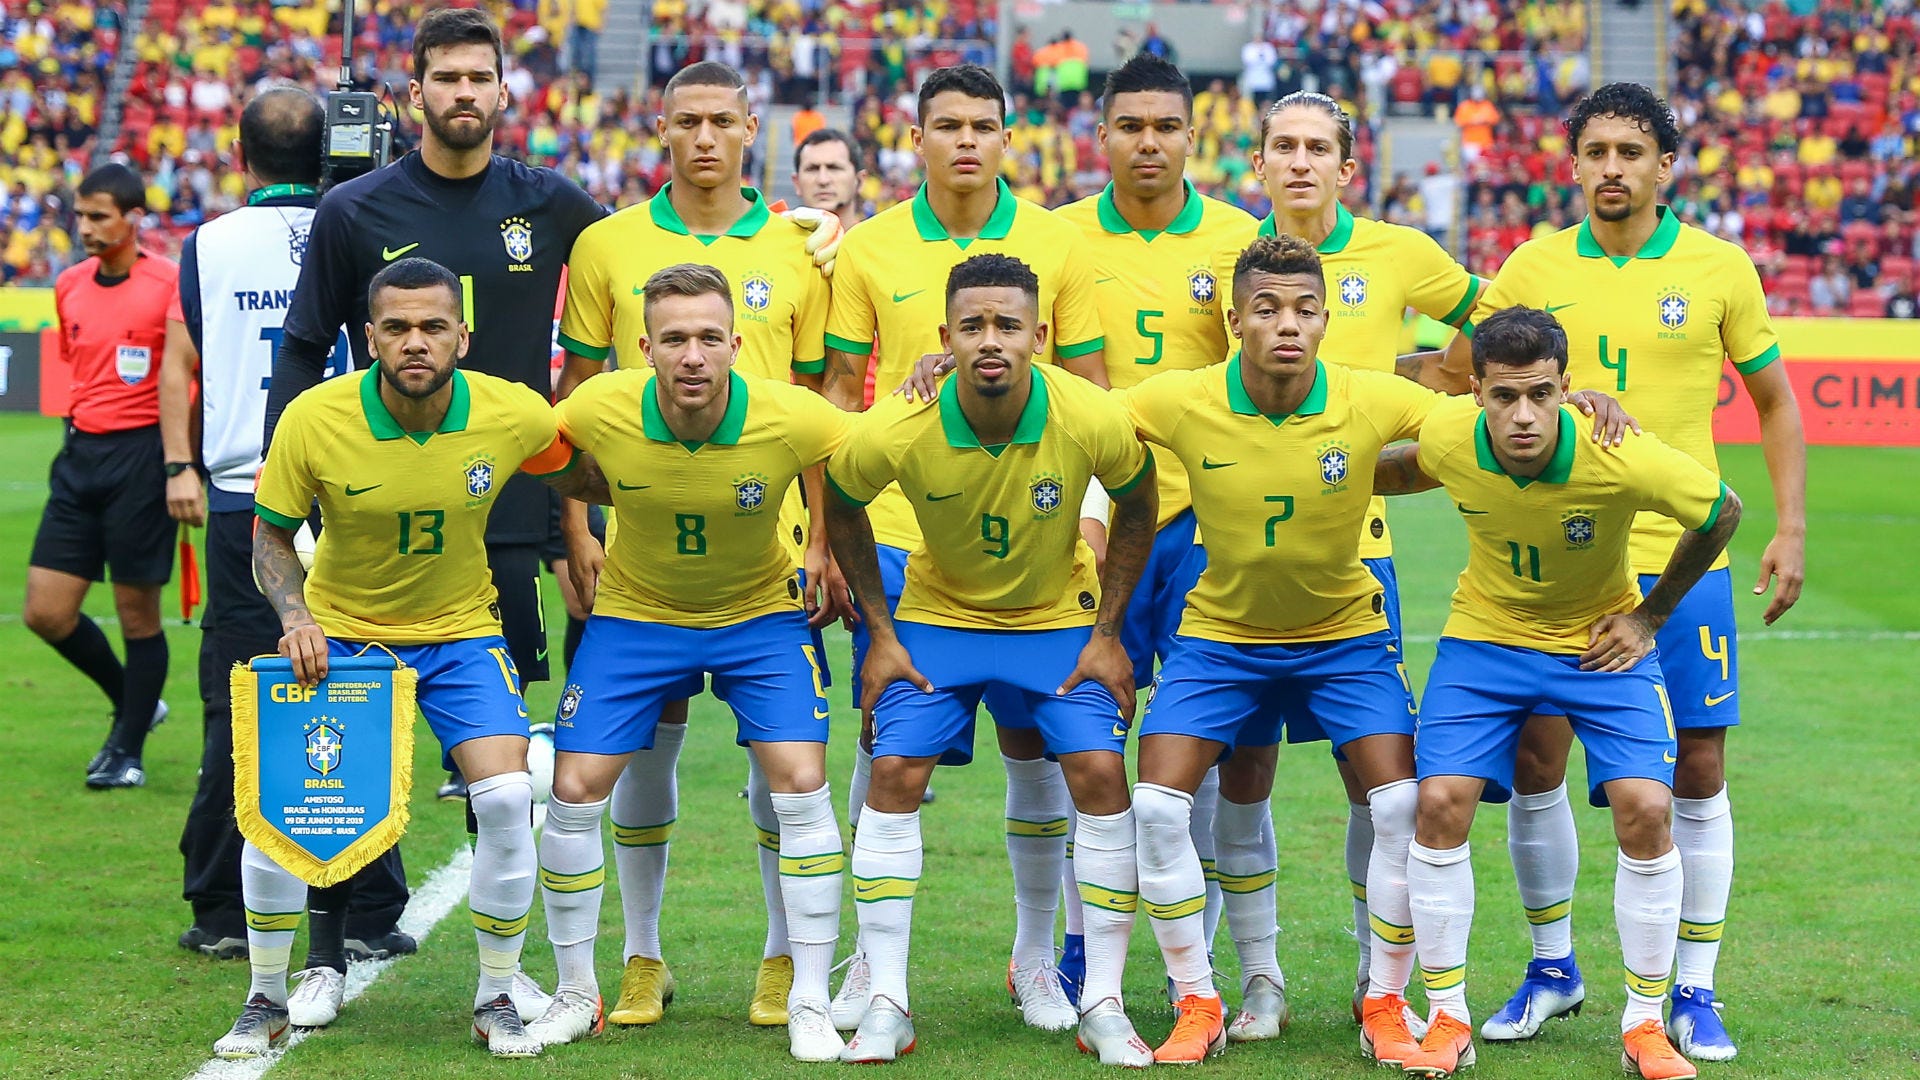 2019コパ・アメリカ ブラジル代表 フィルミーノ ユニフォーム(H) - ウェア